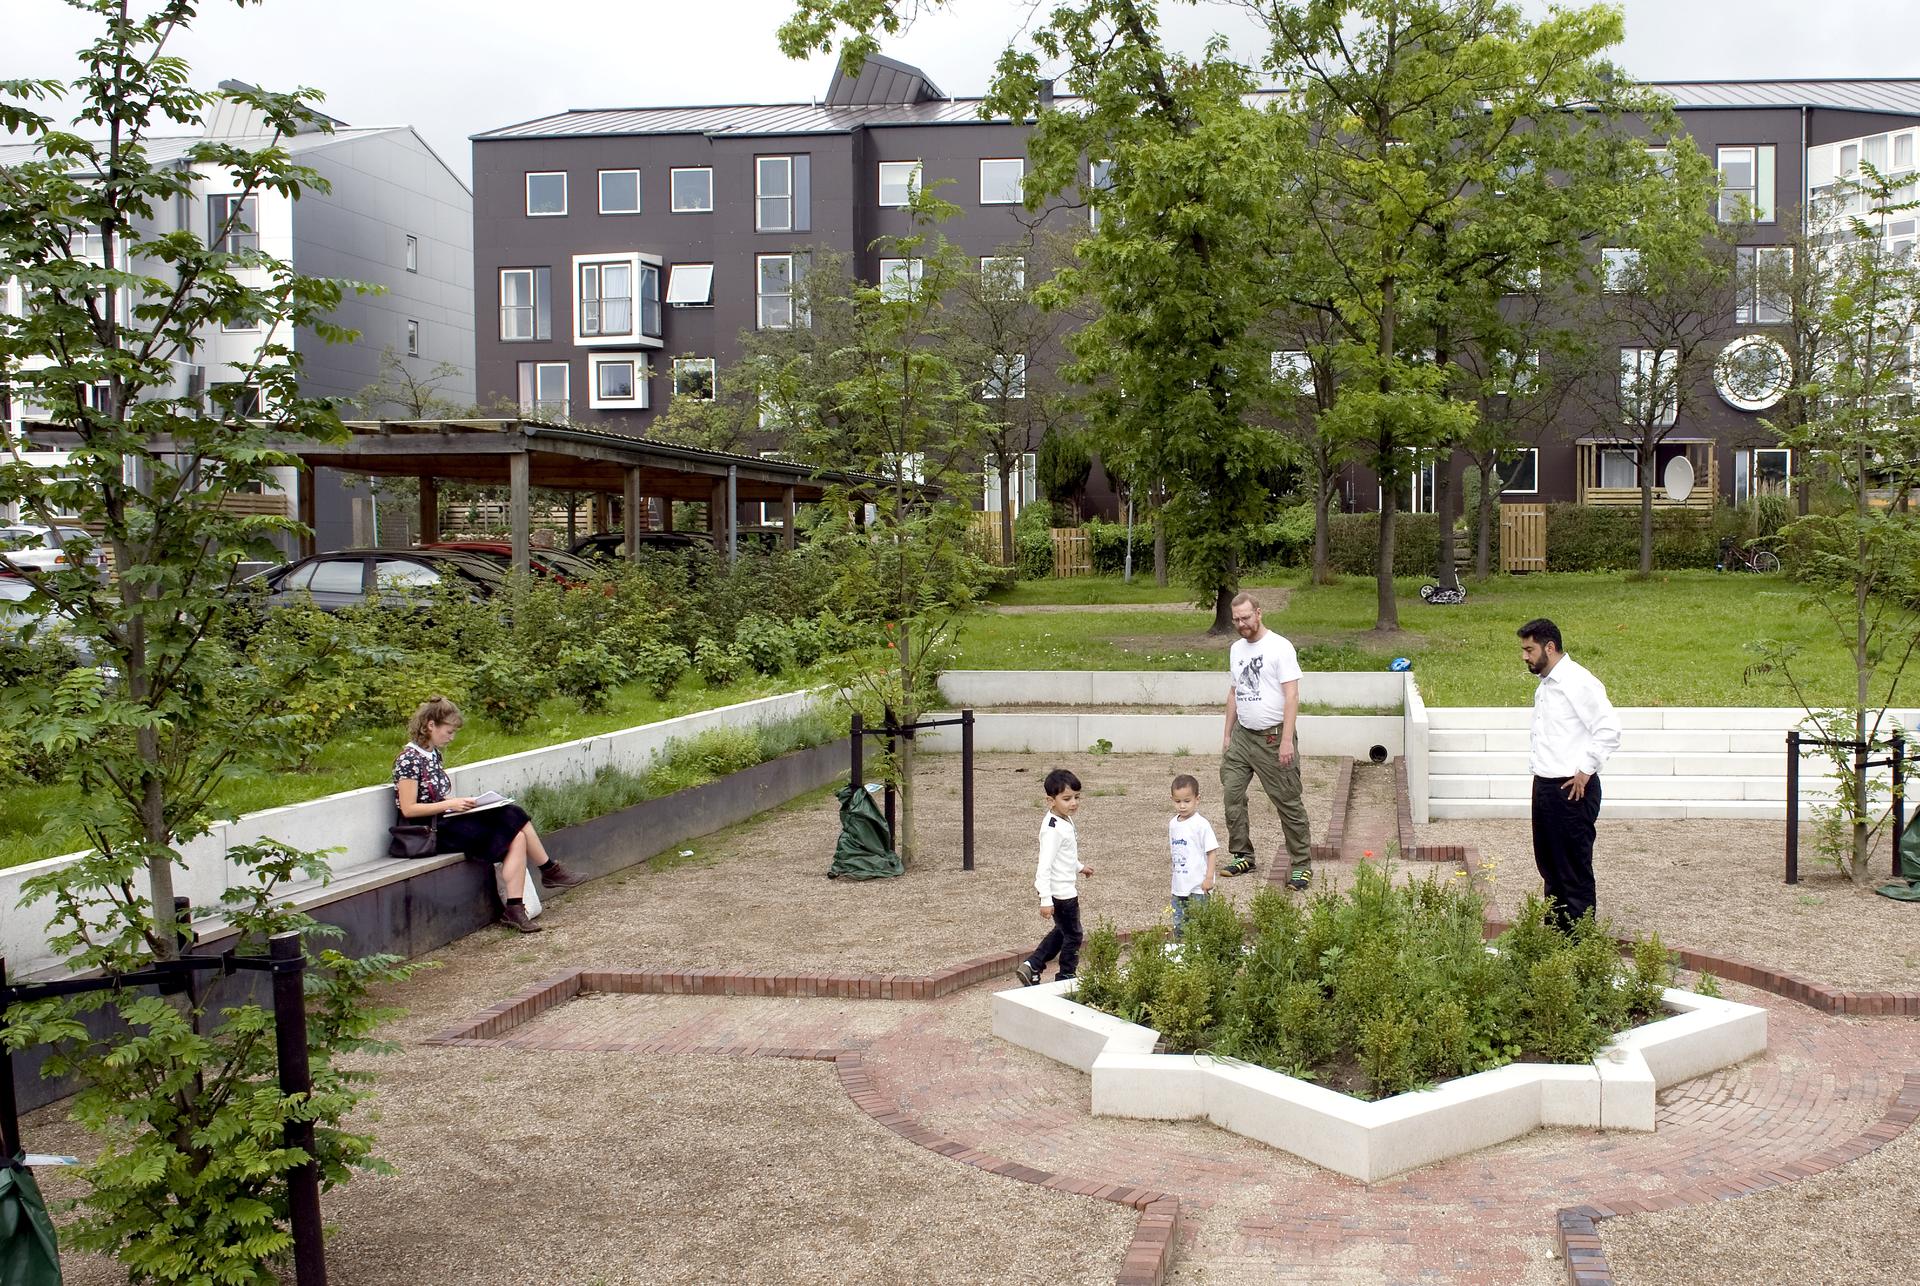 Hospodárenie s dažďovou vodou v mestách môže mať aj takúto podobu. Projekt v štvrti Kokkedal v dánskom Fredensborgu funguje ako záhrada, park aj ihrisko. 

Až 95 % dažďovej vody tu končí v kanáloch a jazerách namiesto v kanalizácii. Toto riešenie je reakciou na prietrž mračien a záplavy, ktoré mestečko postihli v roku 2010. 💧☔ - Obrázok č. 2